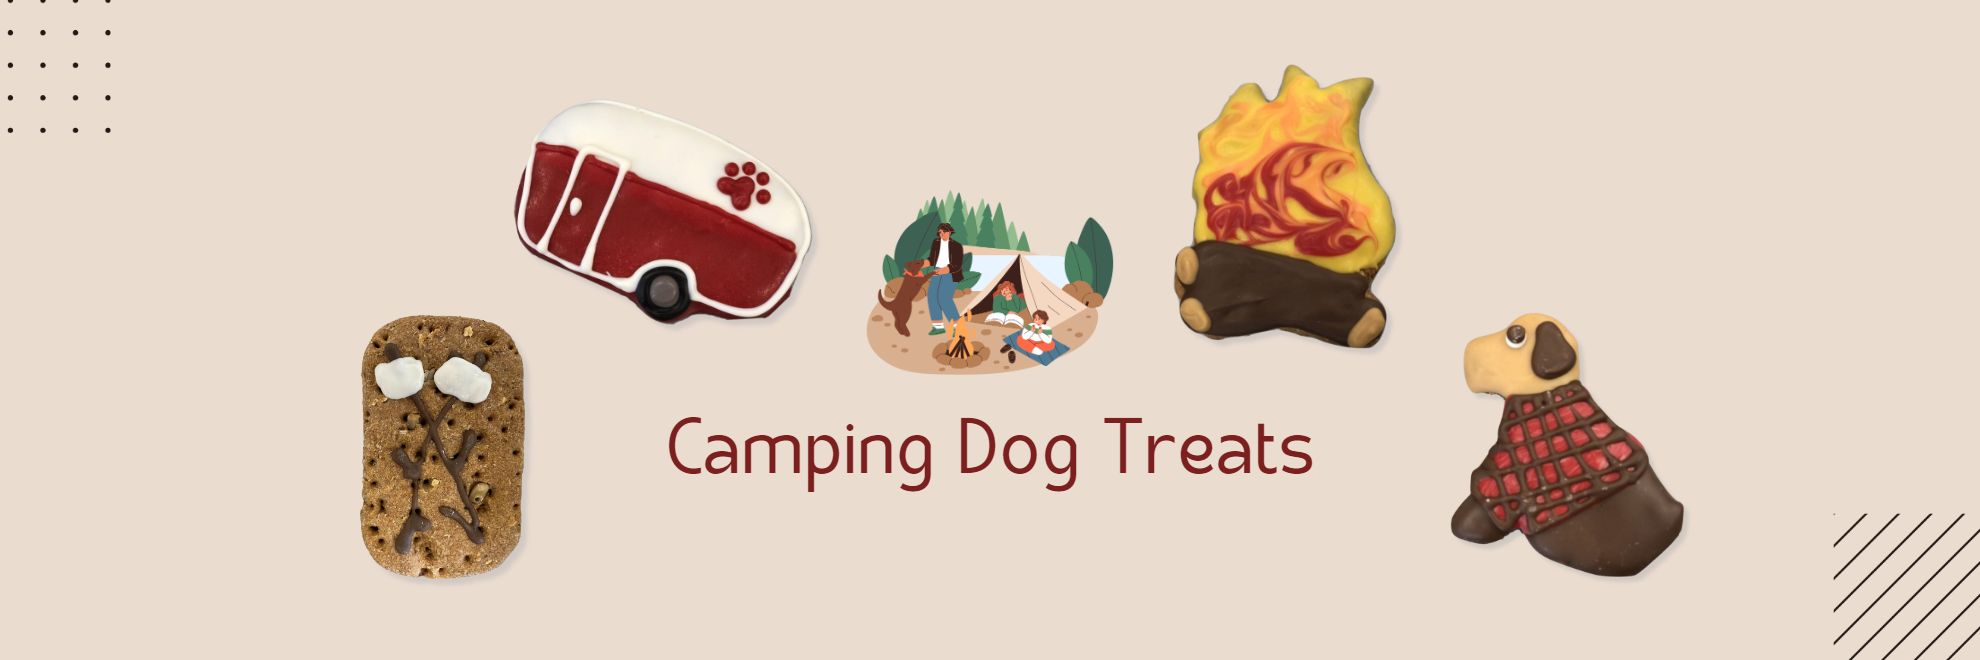 Camping Dog Treats